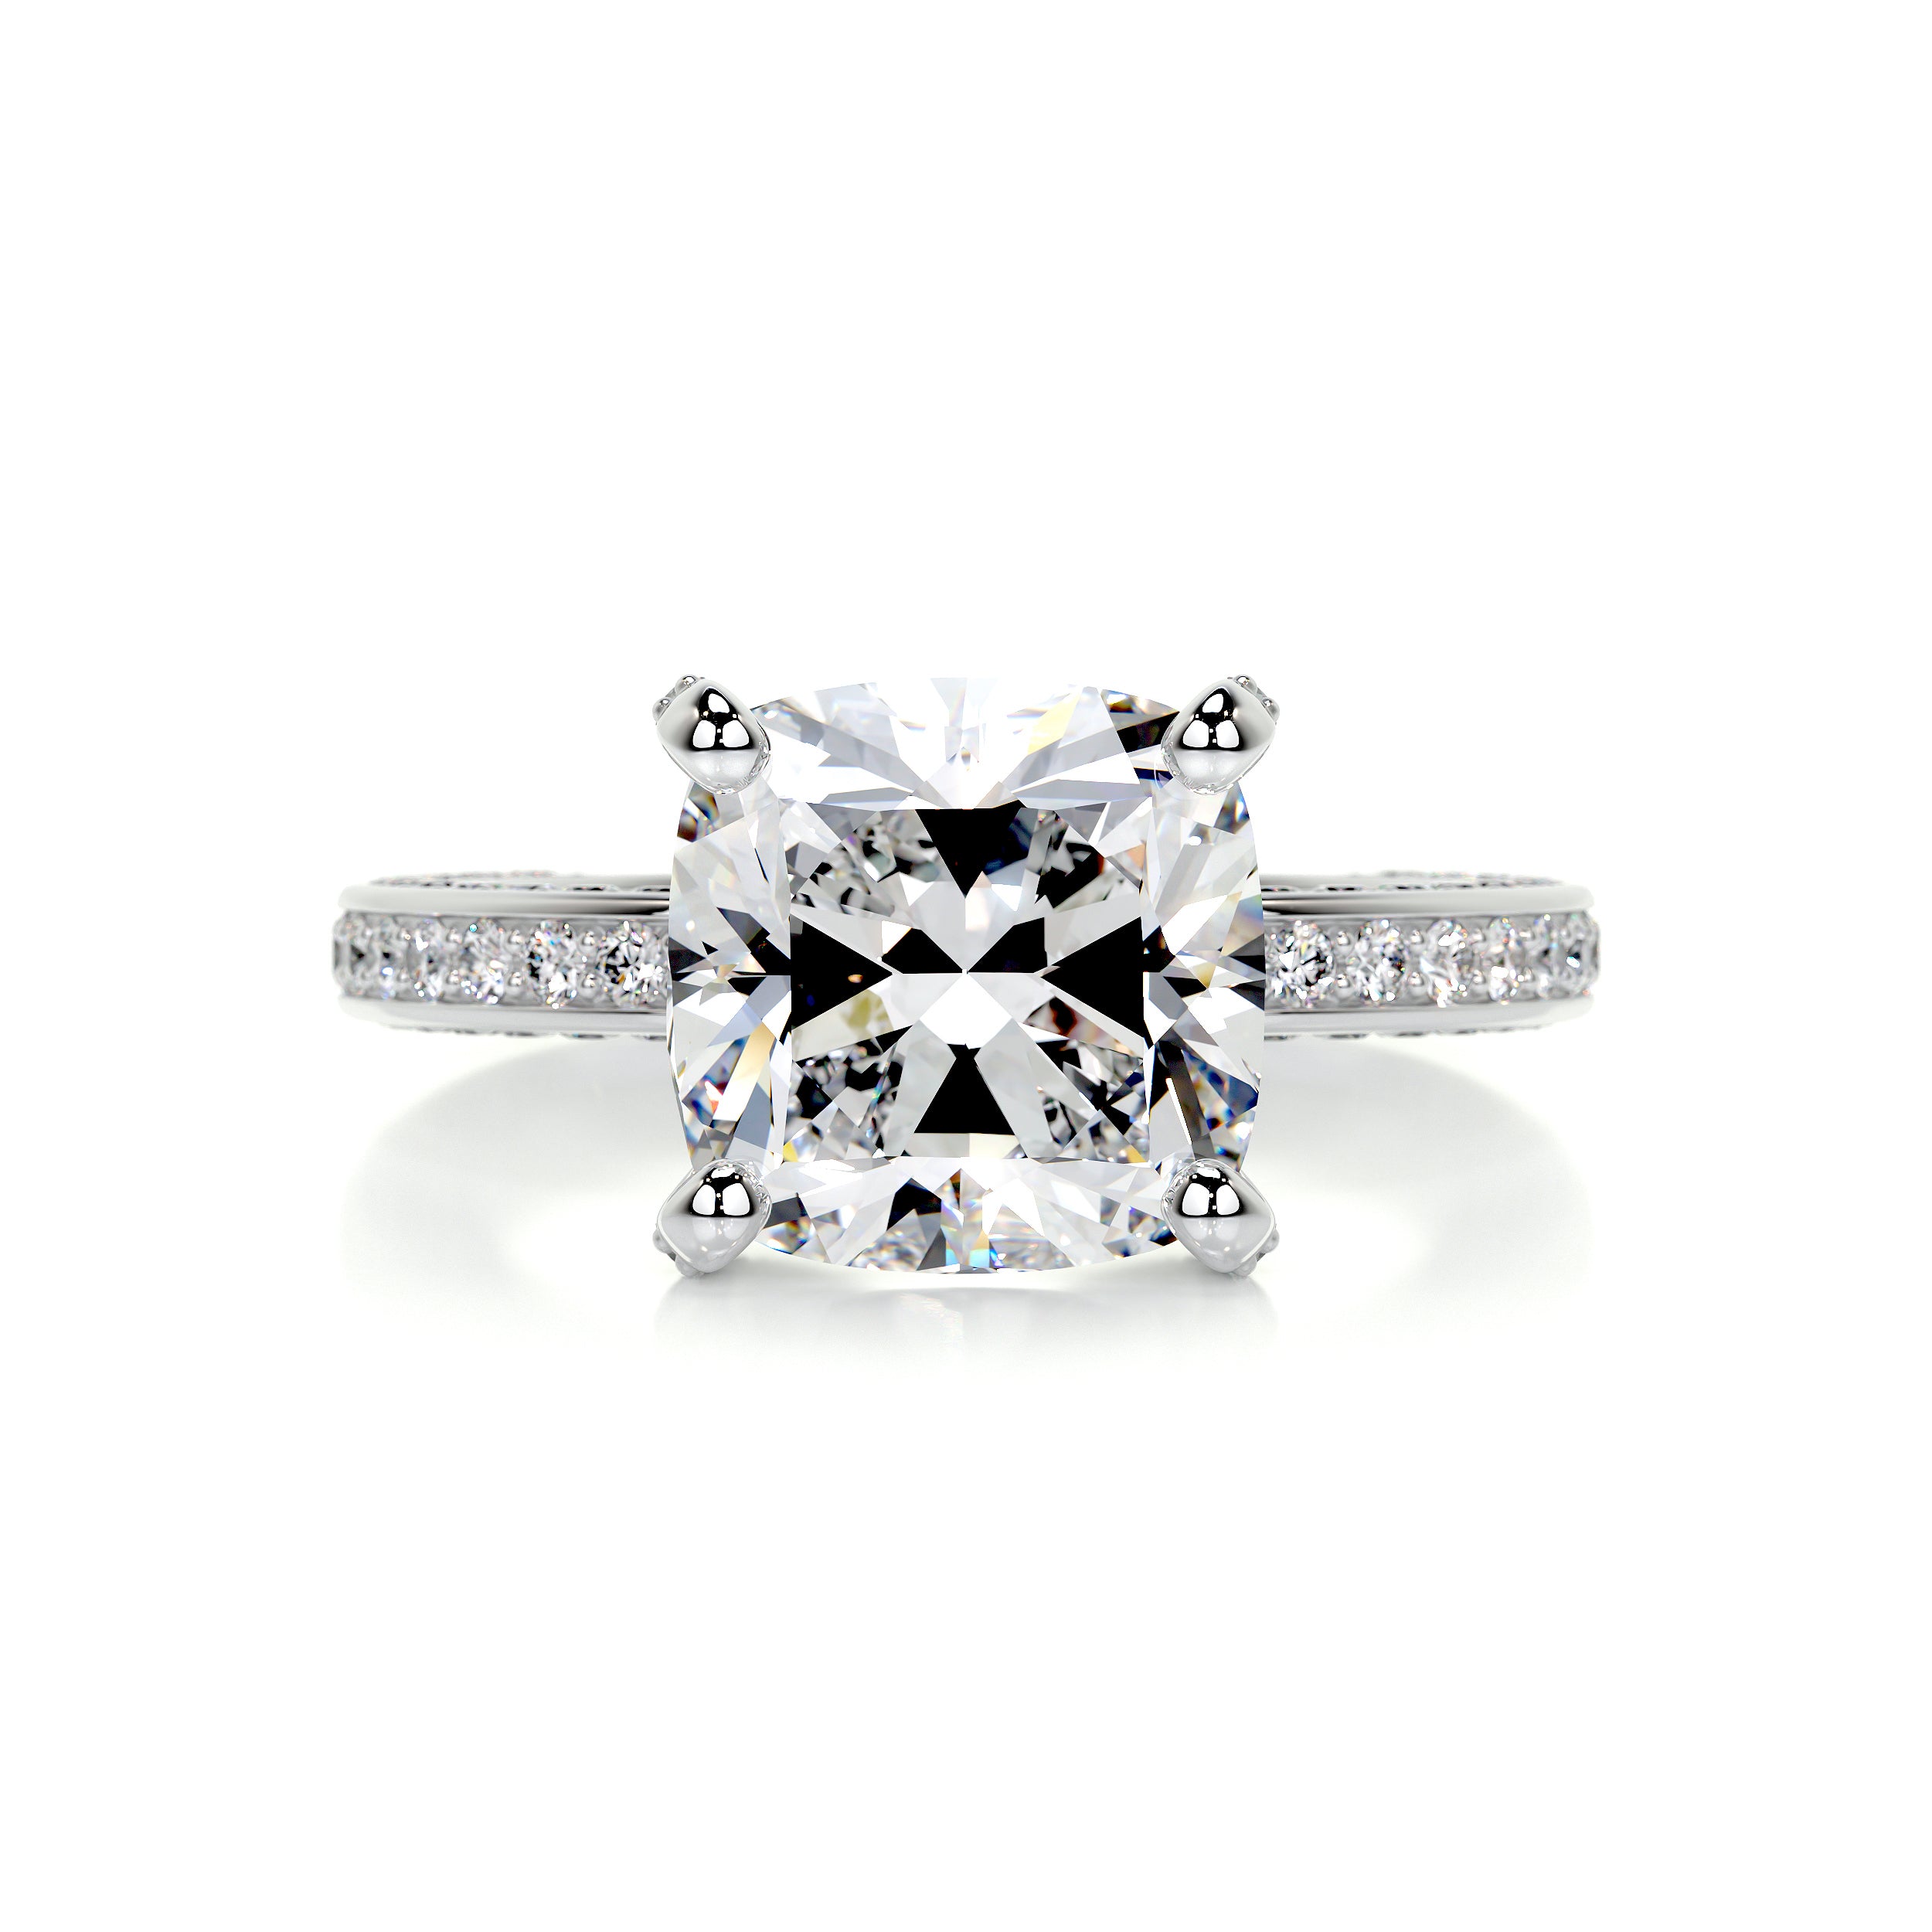 Lyric Diamond Engagement Ring   (2.75 Carat) -18K White Gold